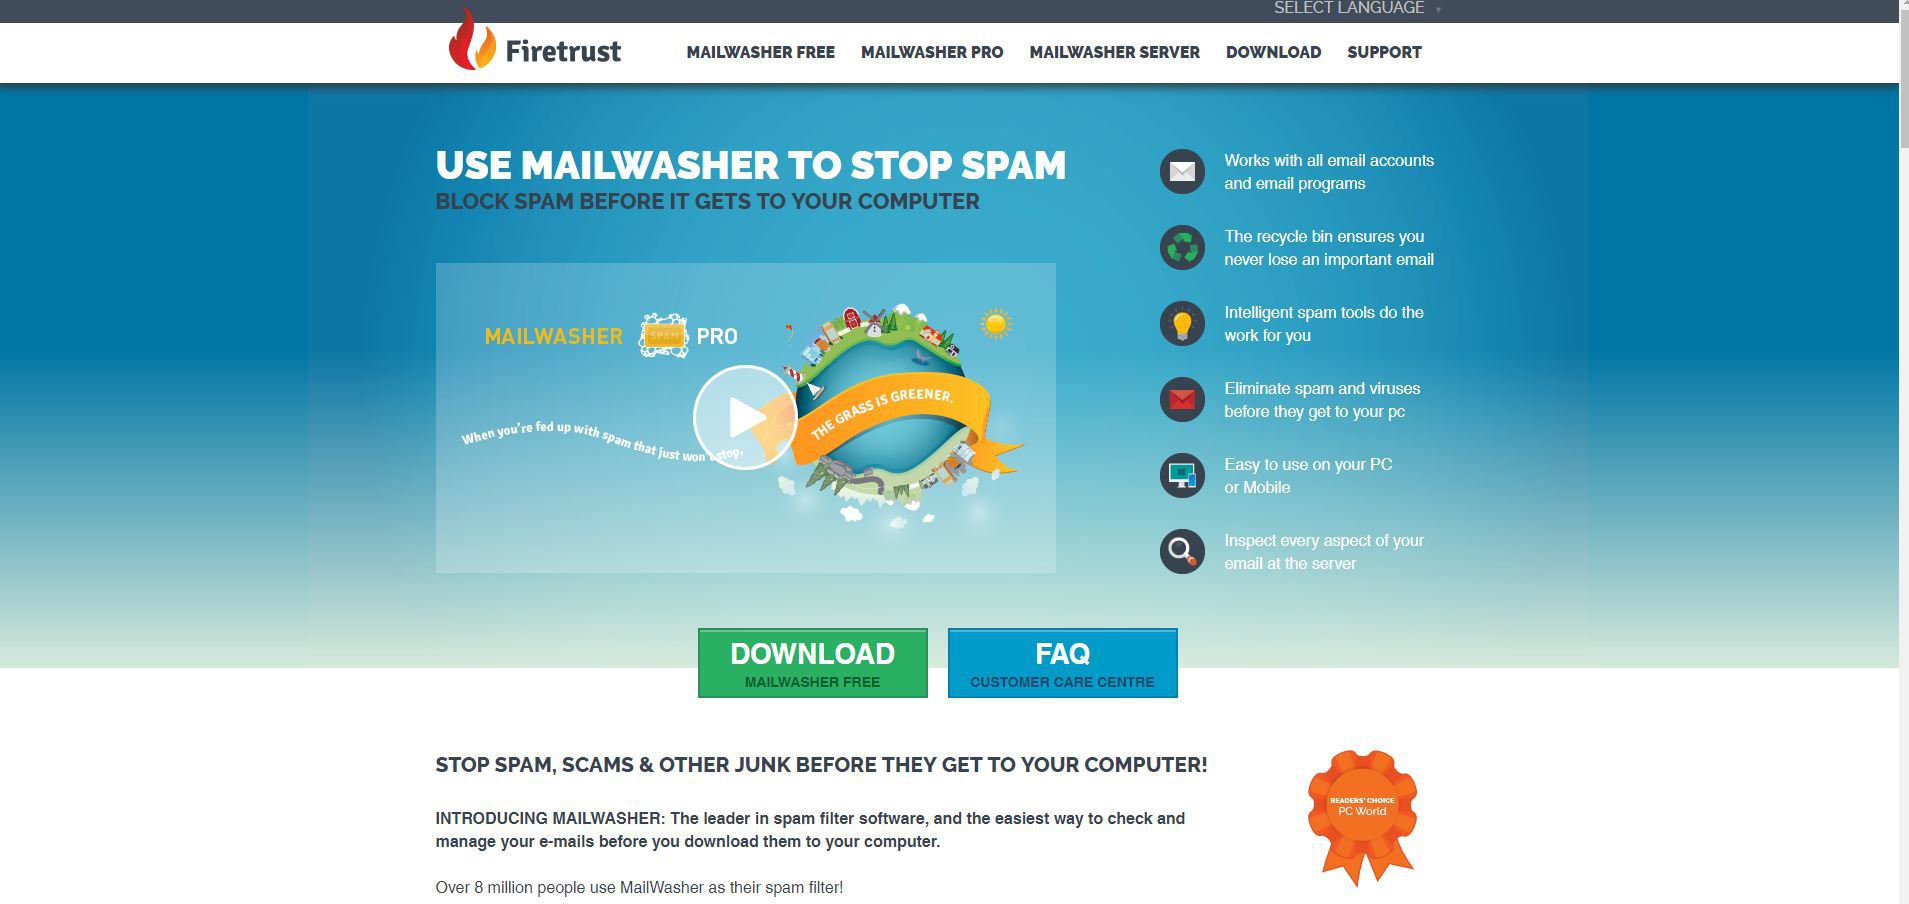 Captura de tela do suplemento anti-spam MailWasher para Outlook